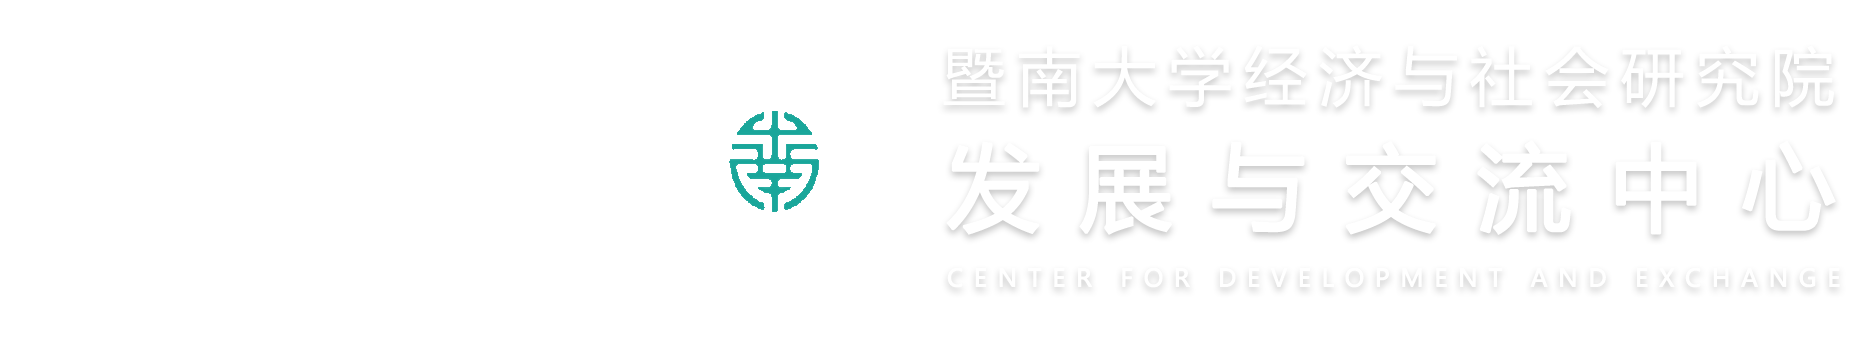 暨南大学是中国第一所由政府创办的华侨学府，是国务院侨办、教育部、广东省共建的“211工程”重点综合性大学，直属国务院侨办领导。